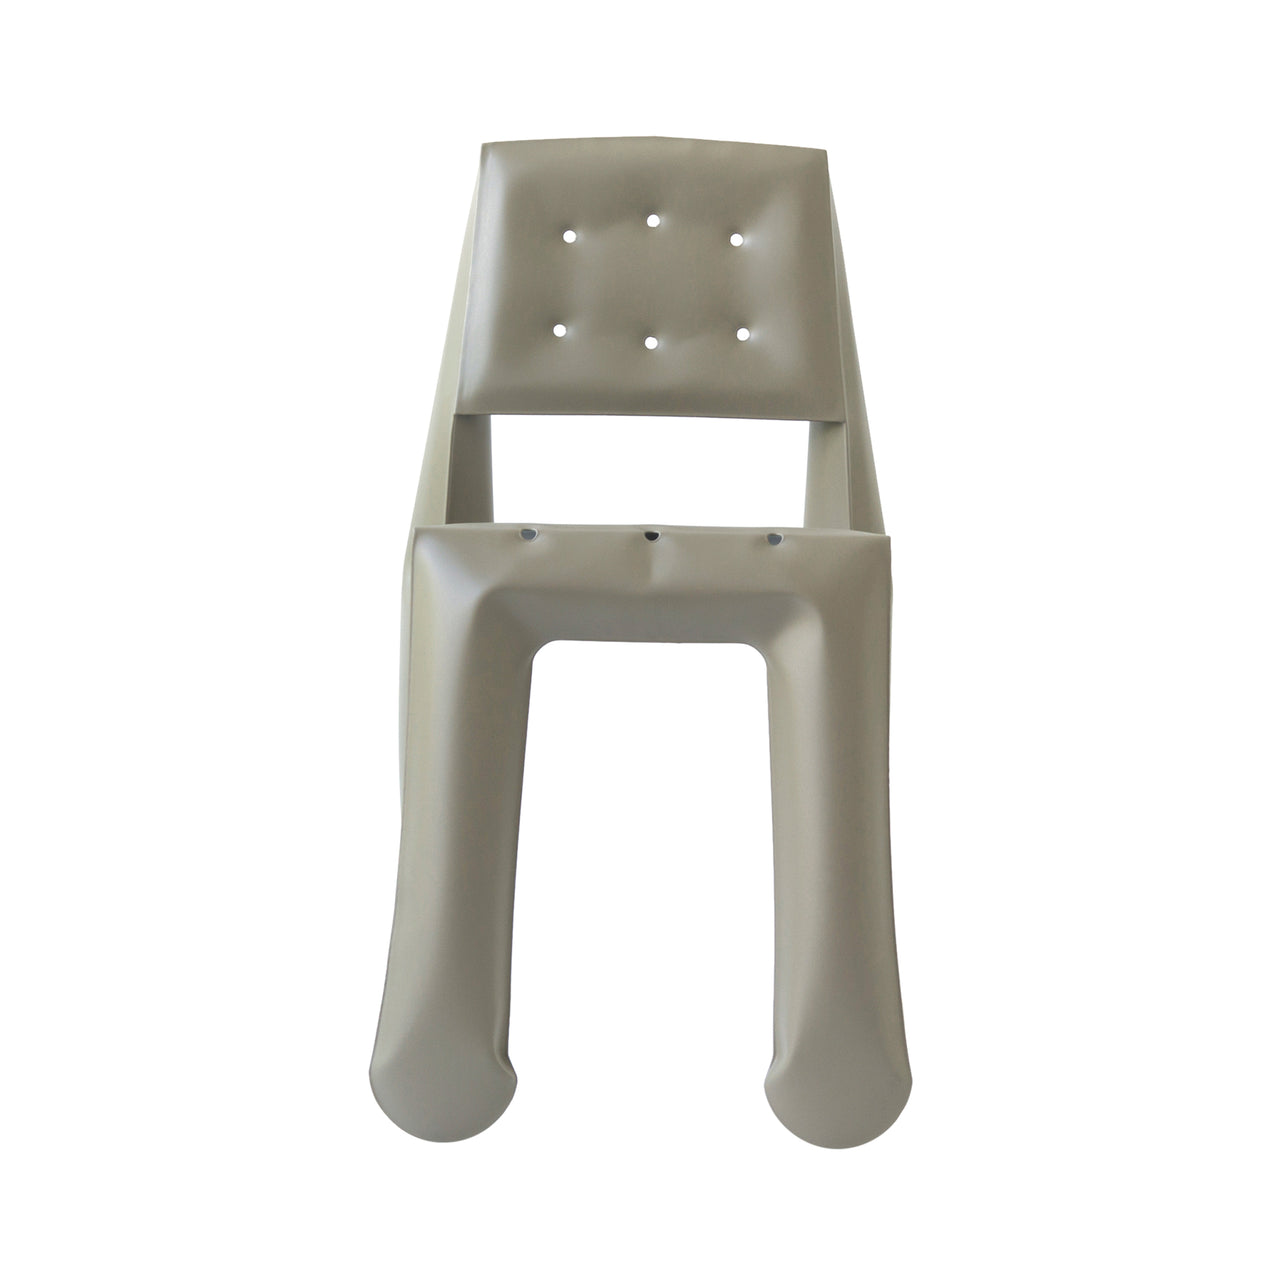 Chippensteel 0.5 Chair: Beige Grey Aluminum